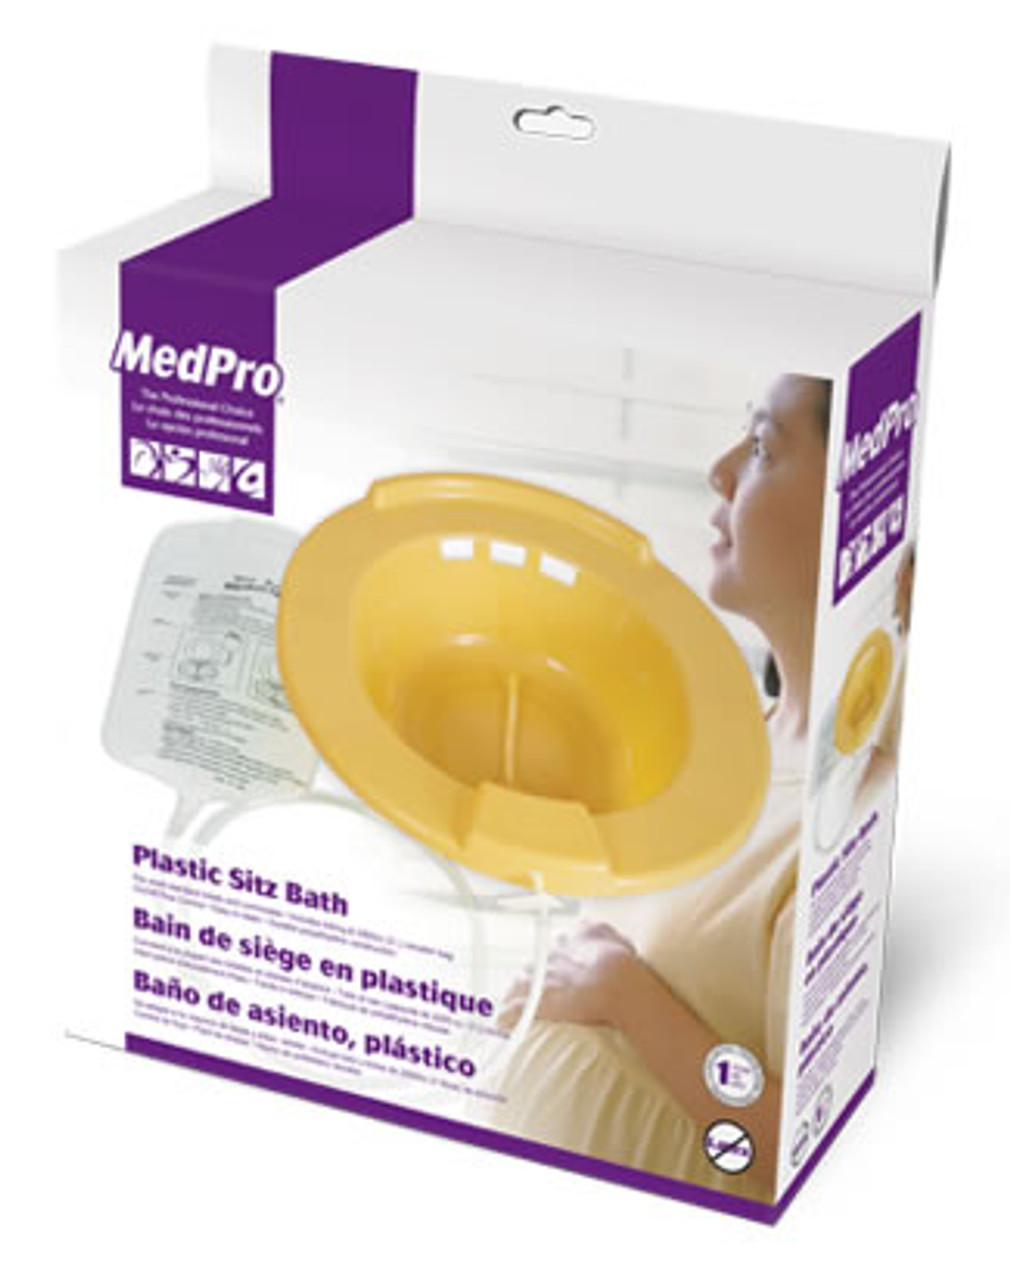 MedPro® MedPro Bain de siège